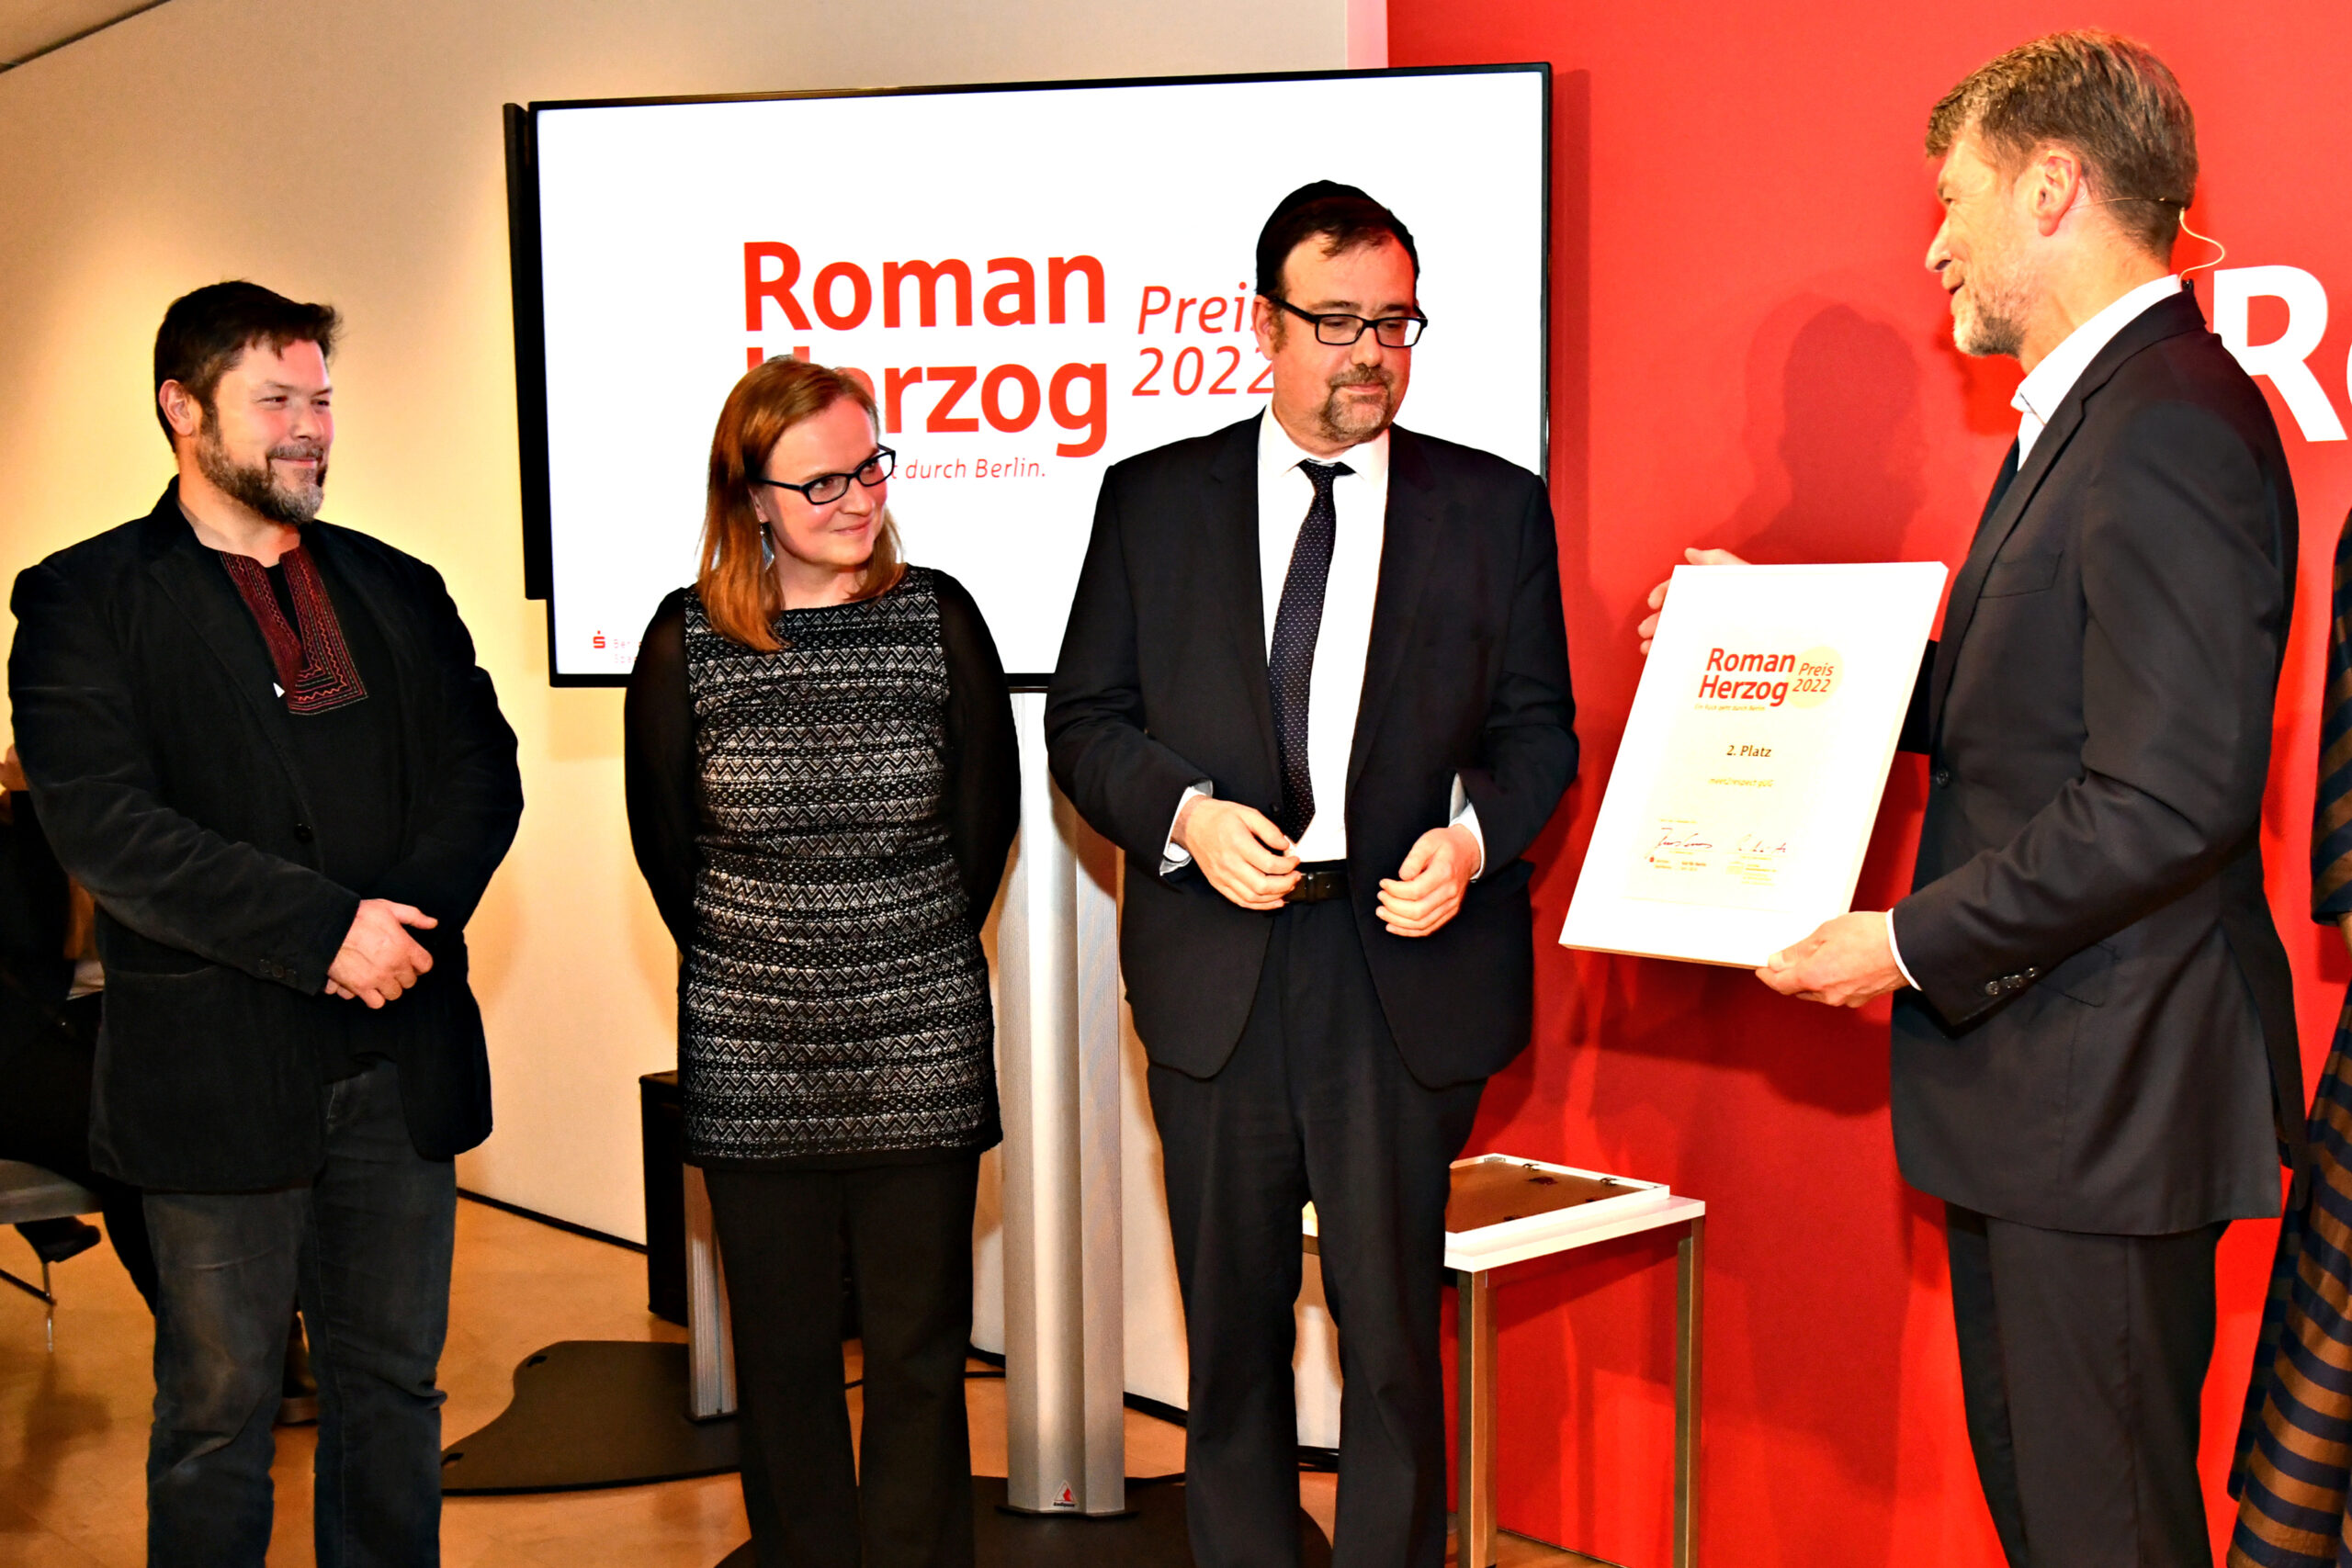 Urkunde Roman Herzog Preis wird an Teammitglieder von meet2respect überreicht